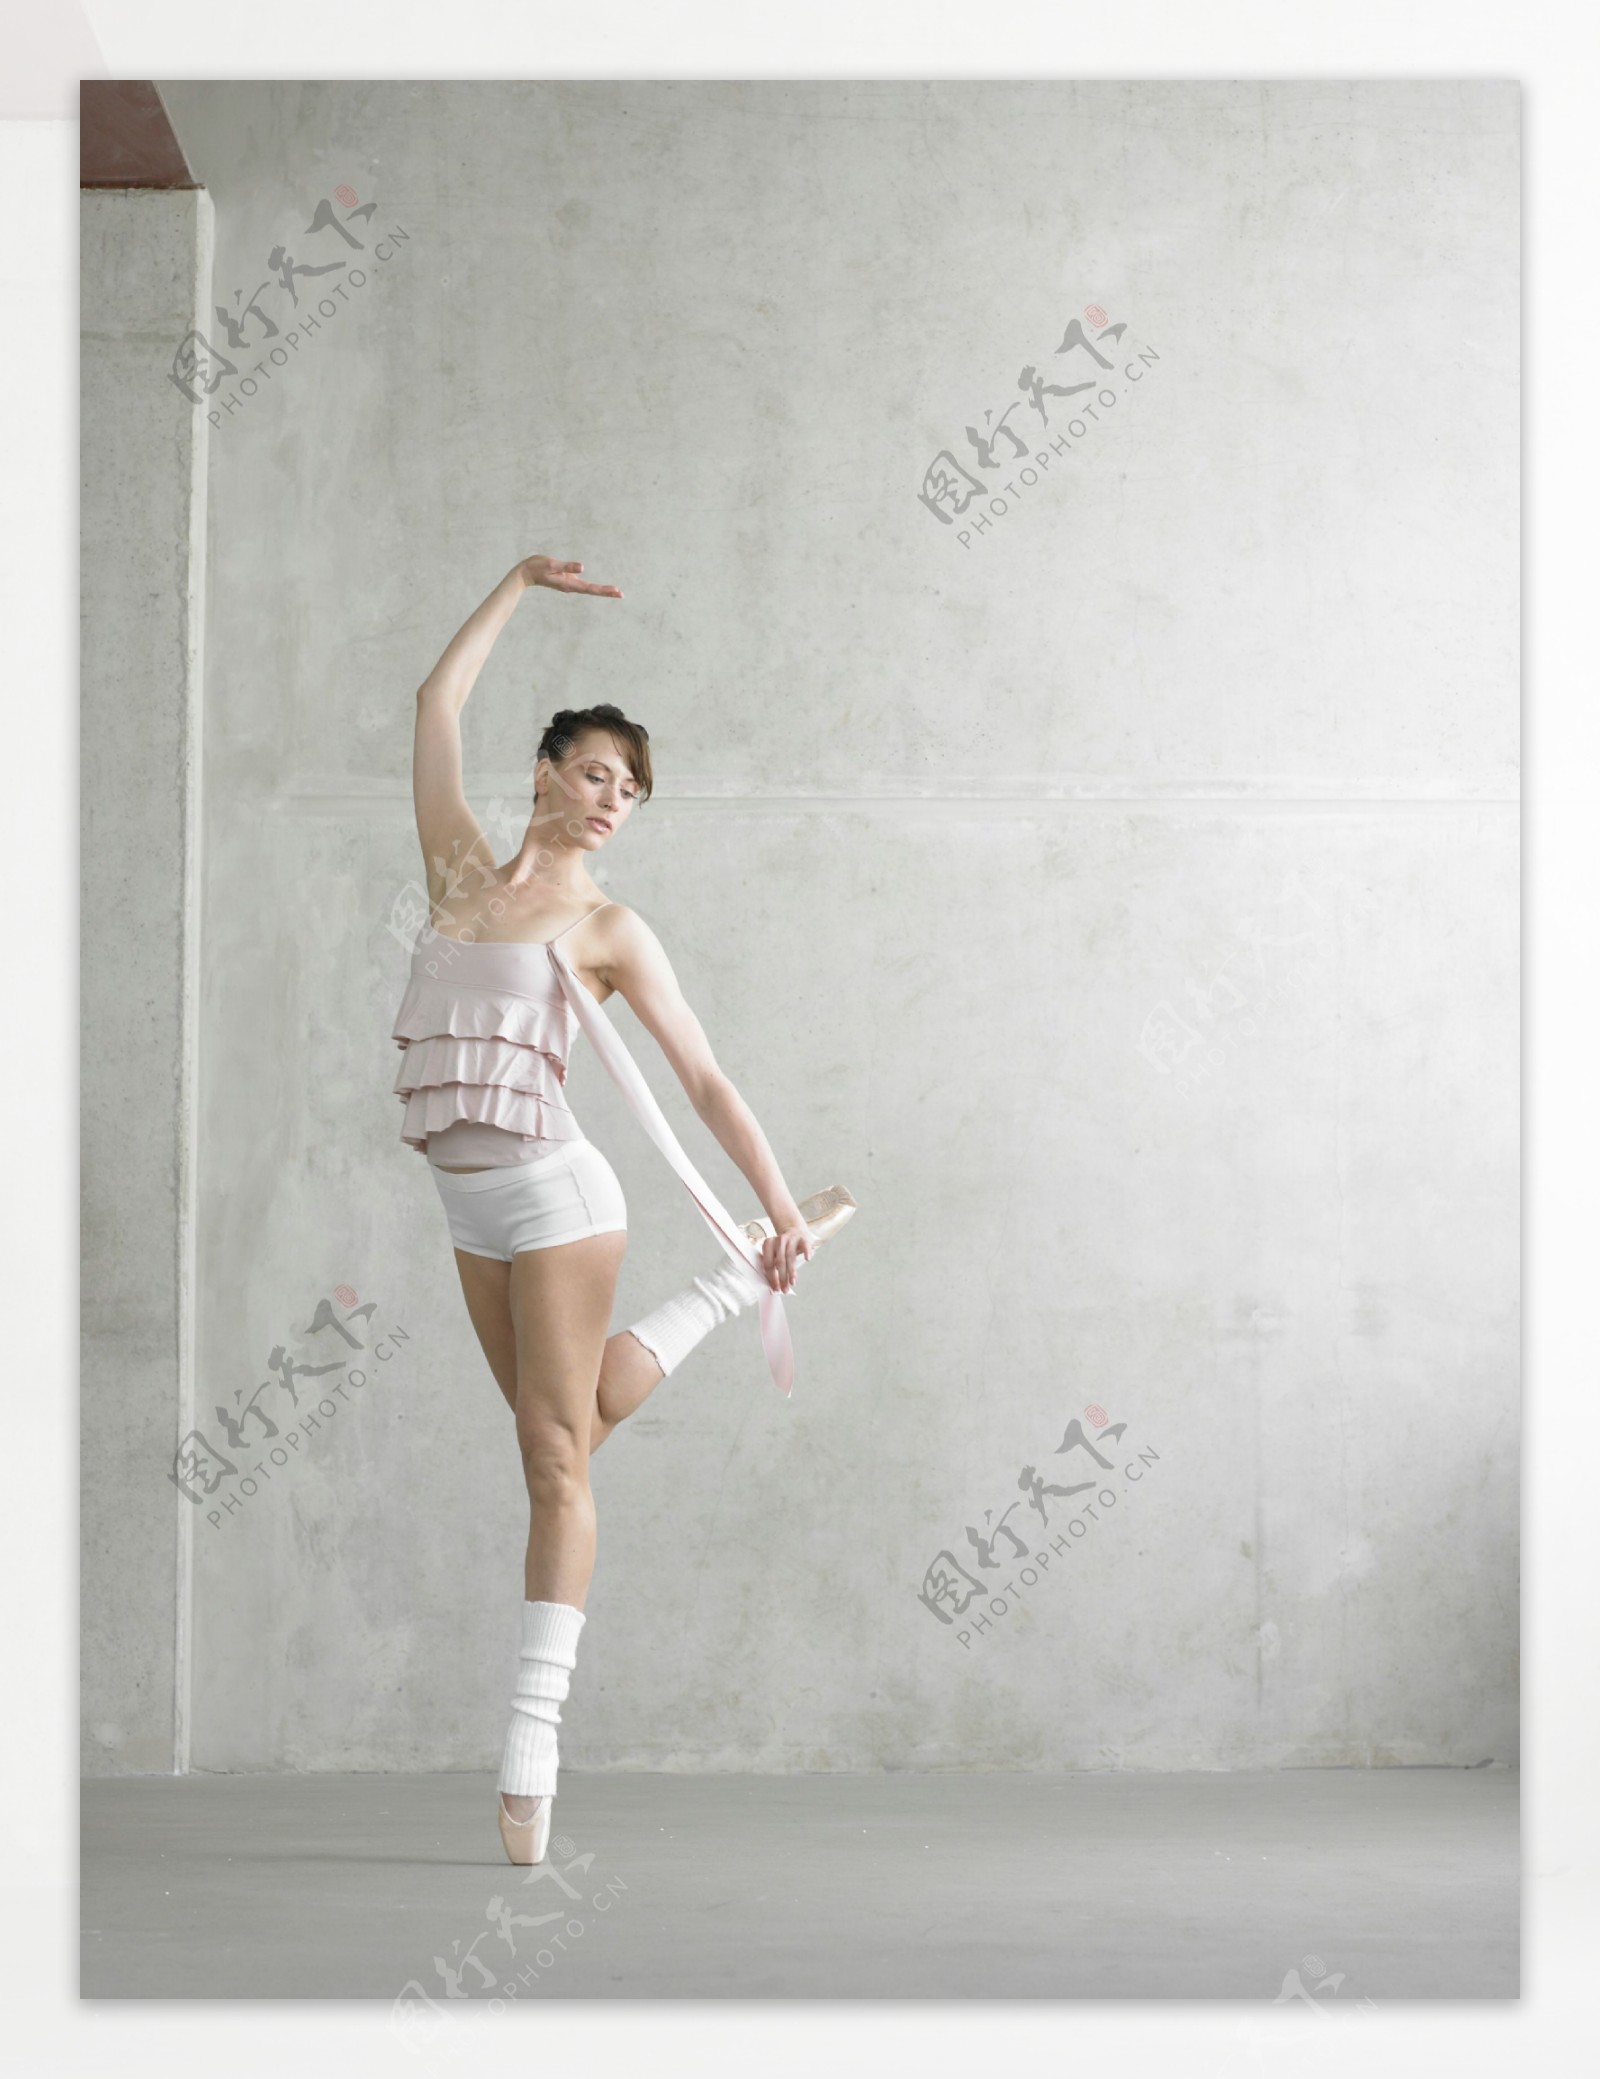 踮起脚尖的外国女性舞蹈演员图片